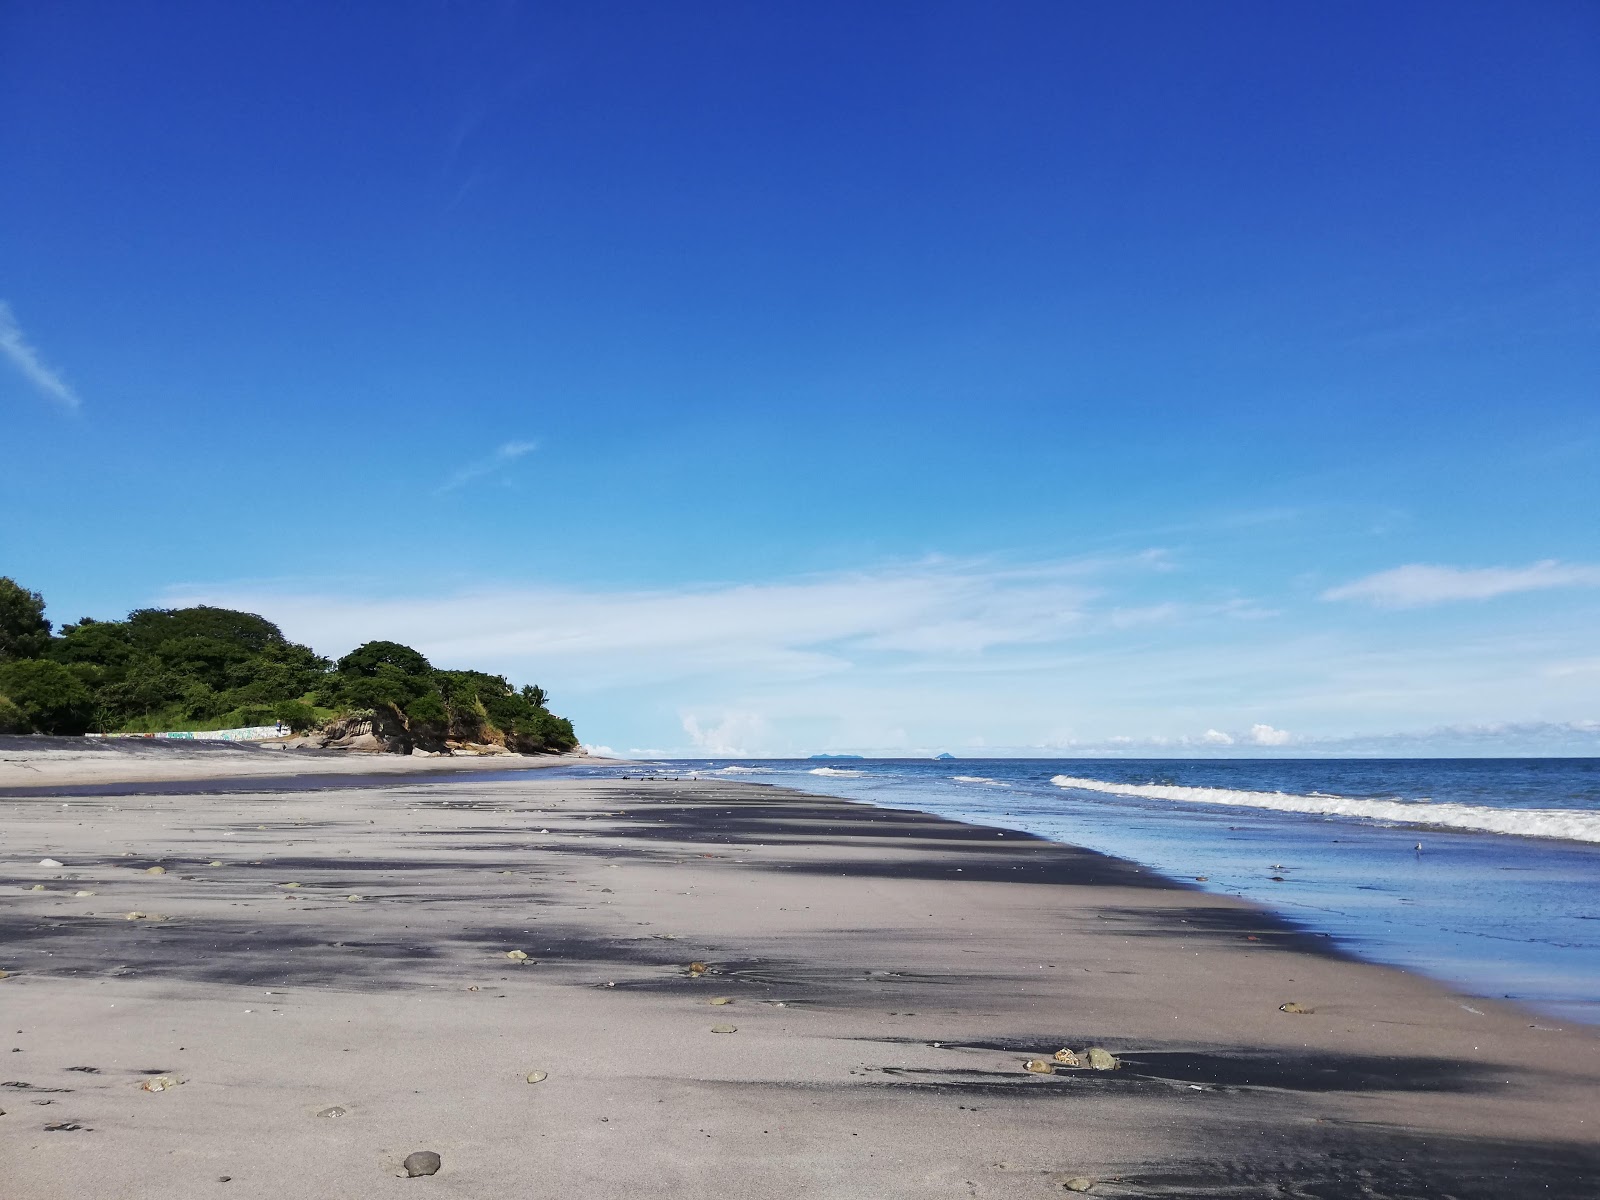 Foto von Costa Esmeralda II mit geräumiger strand